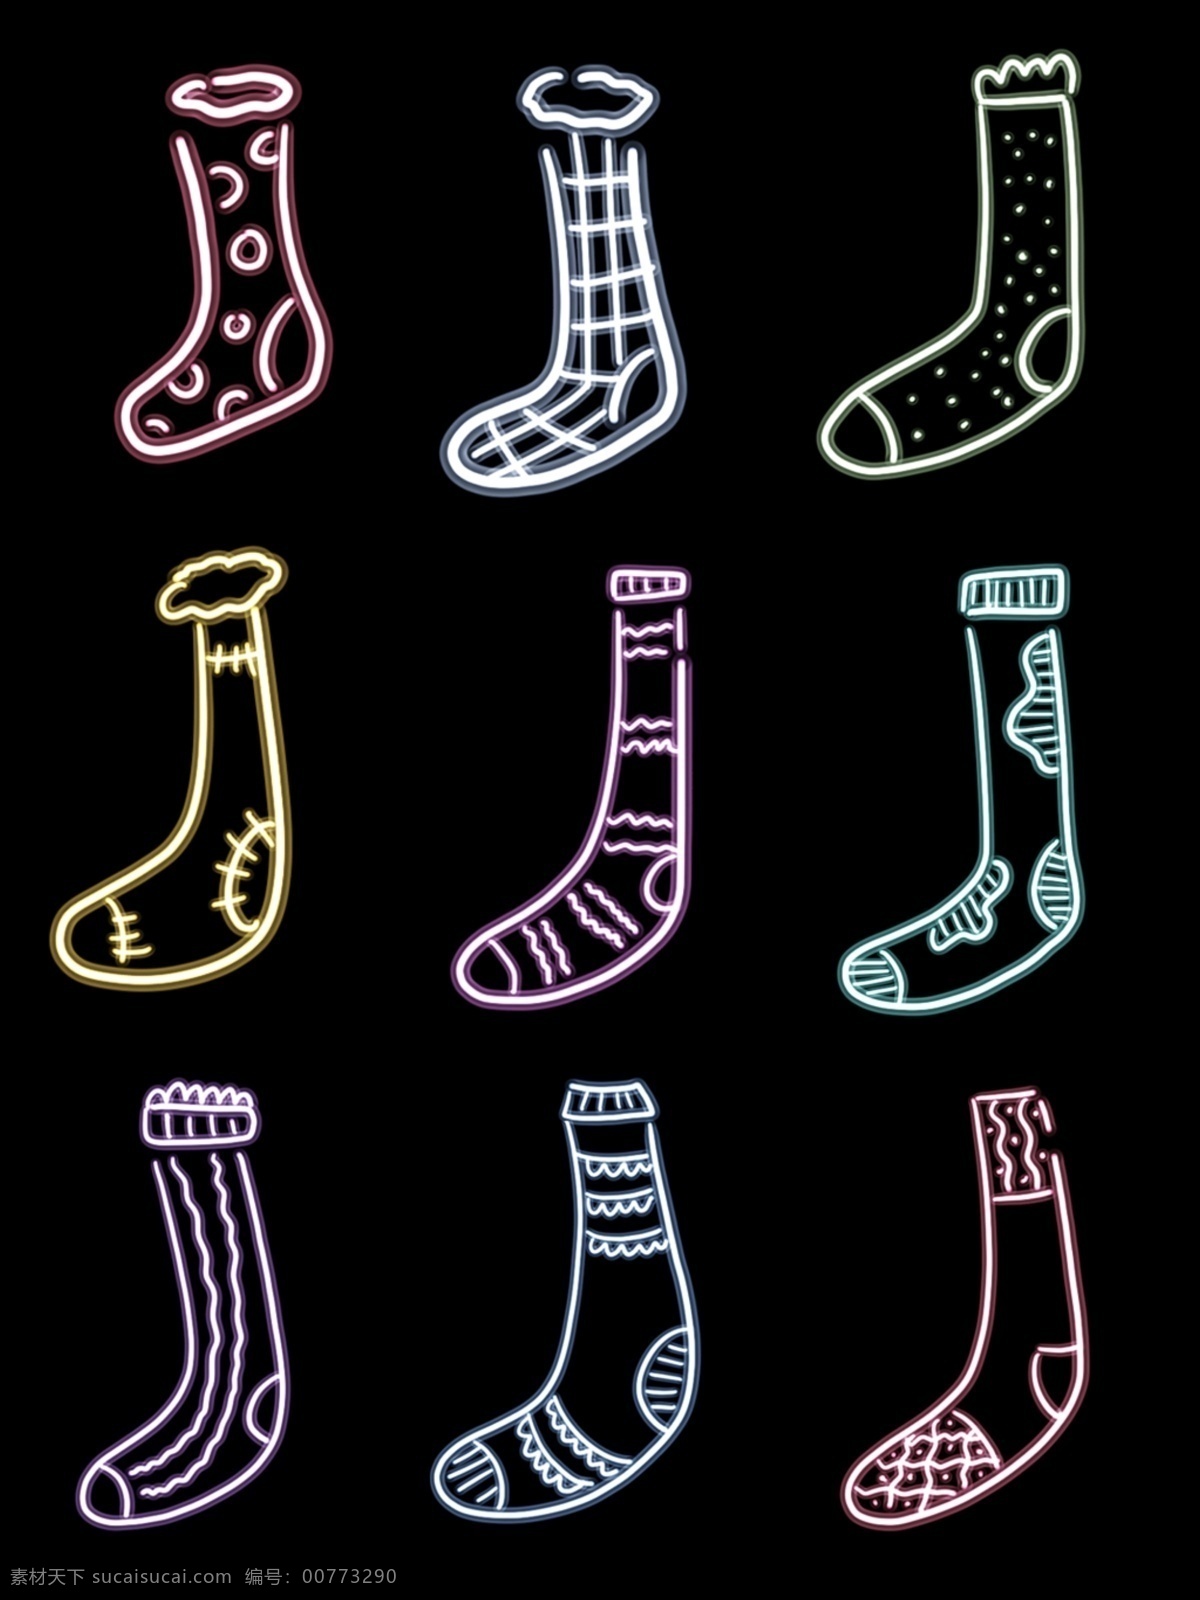 霓虹灯 可爱 发光 袜子 装饰 图案 元素 发光图案 发光素材 可爱袜子 霓虹灯装饰 霓虹灯图案 发光袜子